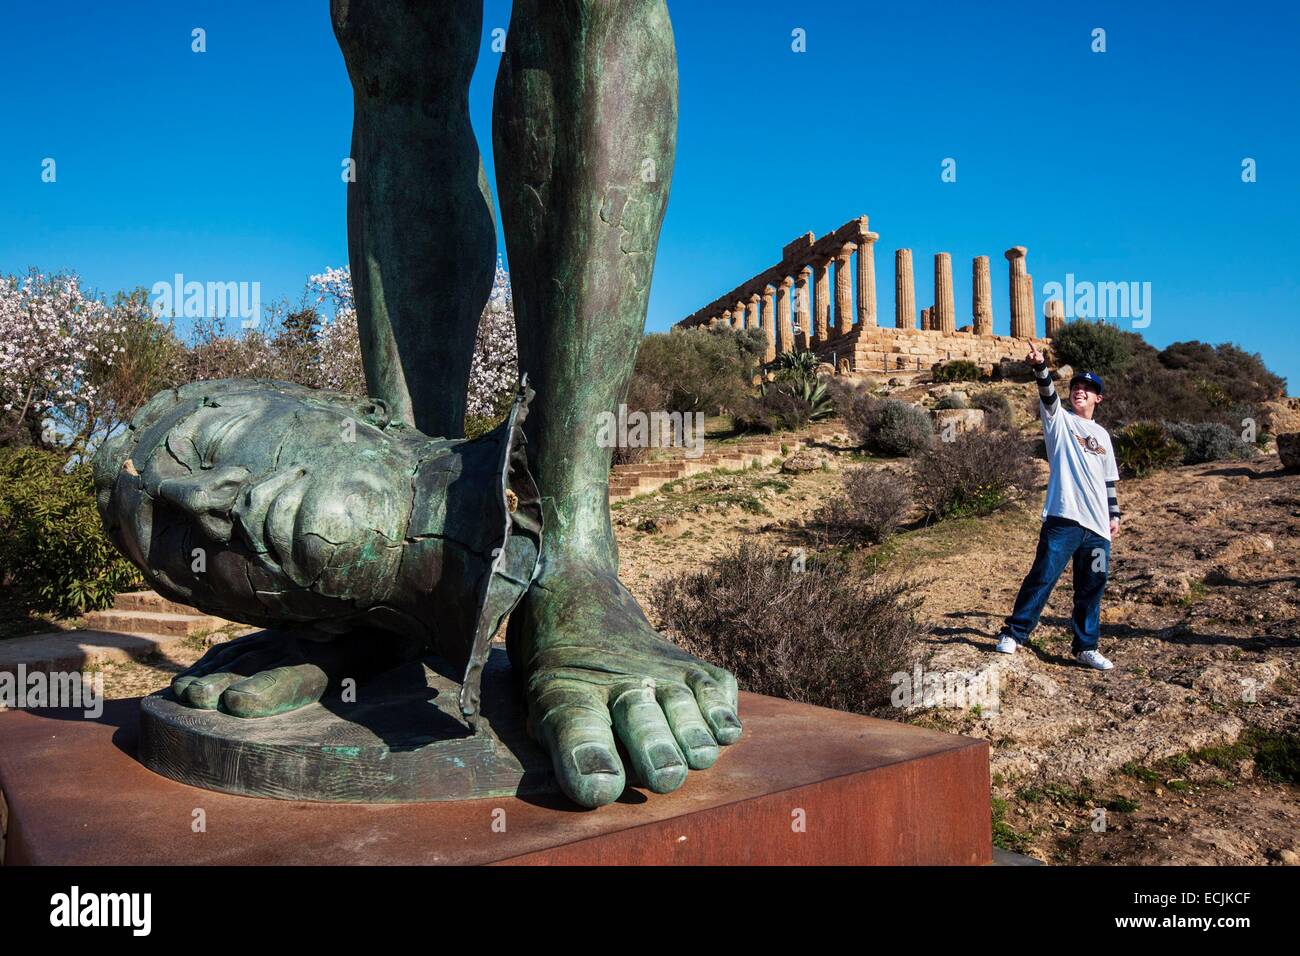 Italien, Sizilien, Agrigento, aufgeführt als Weltkulturerbe der UNESCO, Tal der Tempel, Tempel der Juno mit einer Bronzeskulptur des polnischen Bildhauers Igor Mitoraj Stockfoto